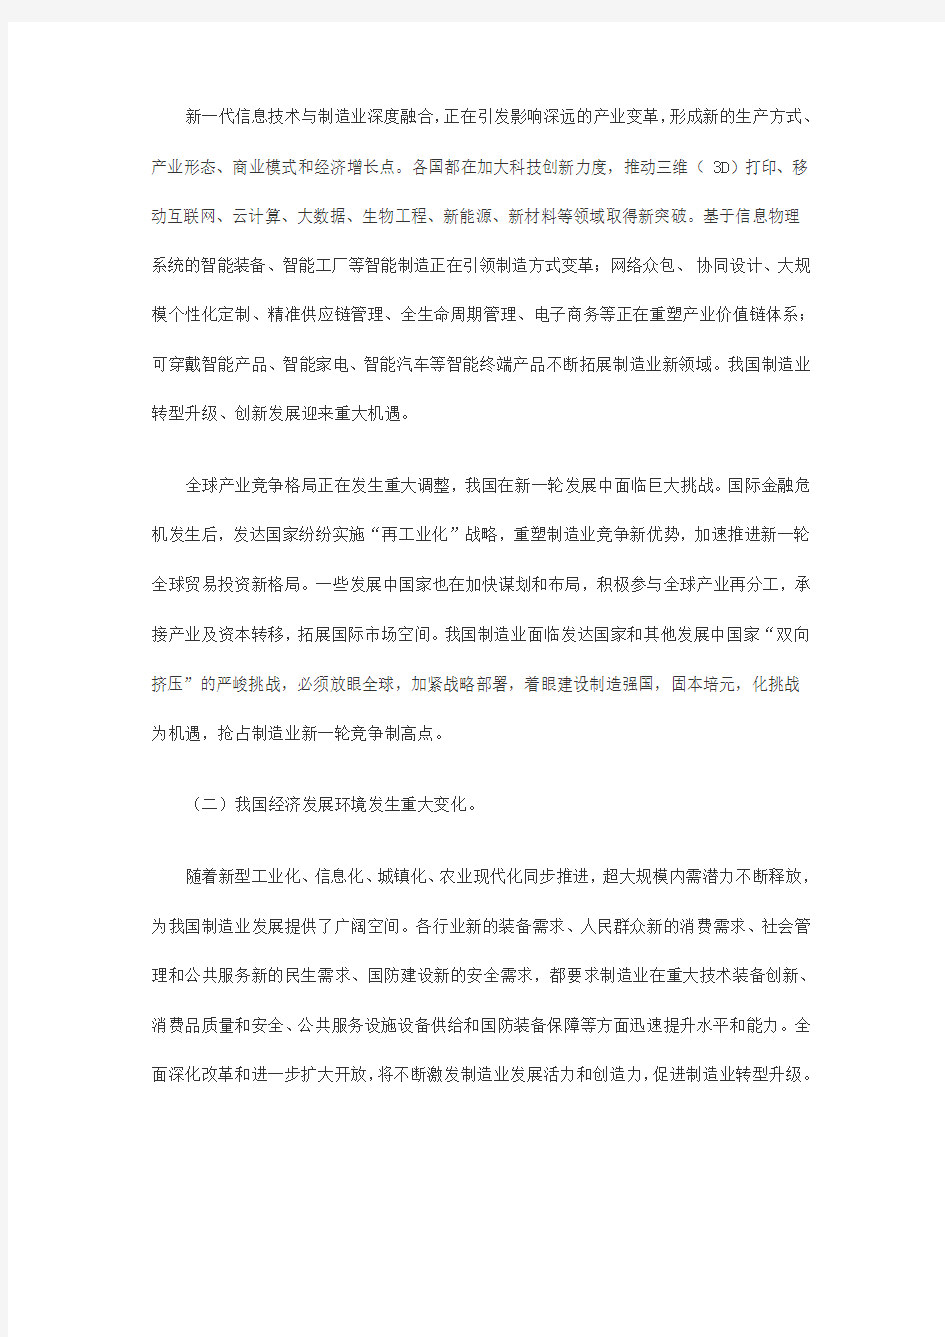 中国制造2025全文及解读